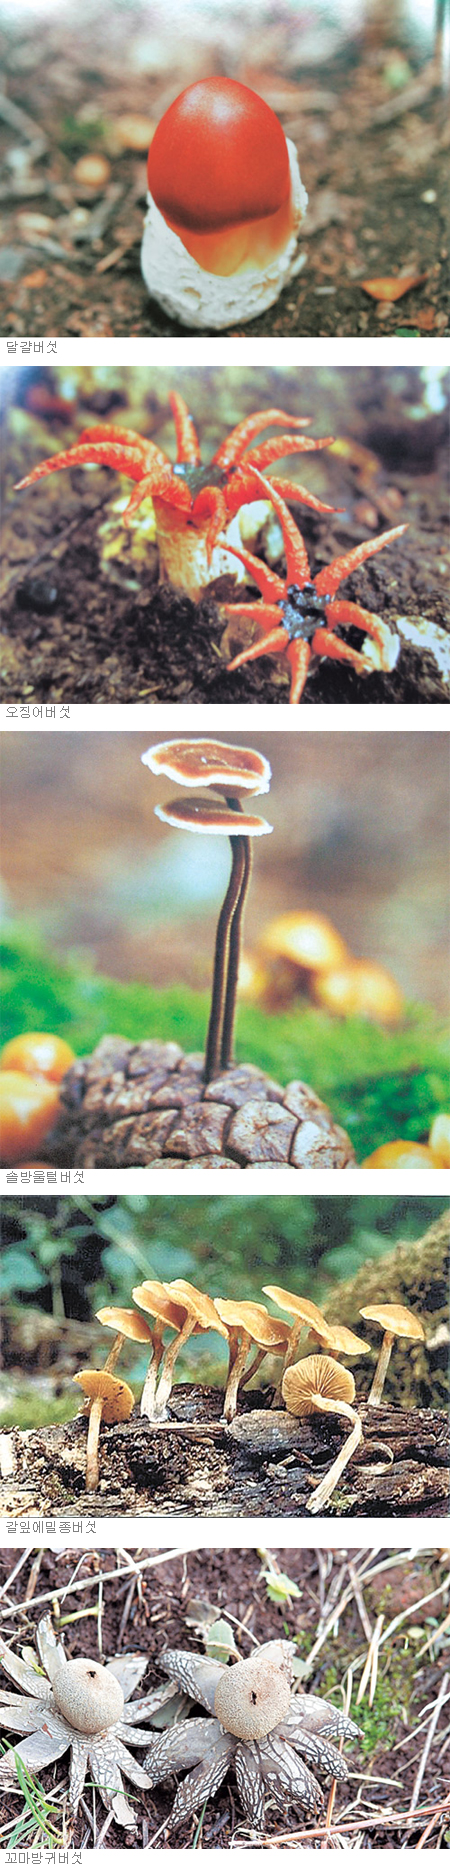 달걀버섯 오징어버섯 솔방울버섯 갈잎에밀종버섯 꼬마방귀버섯.jpg